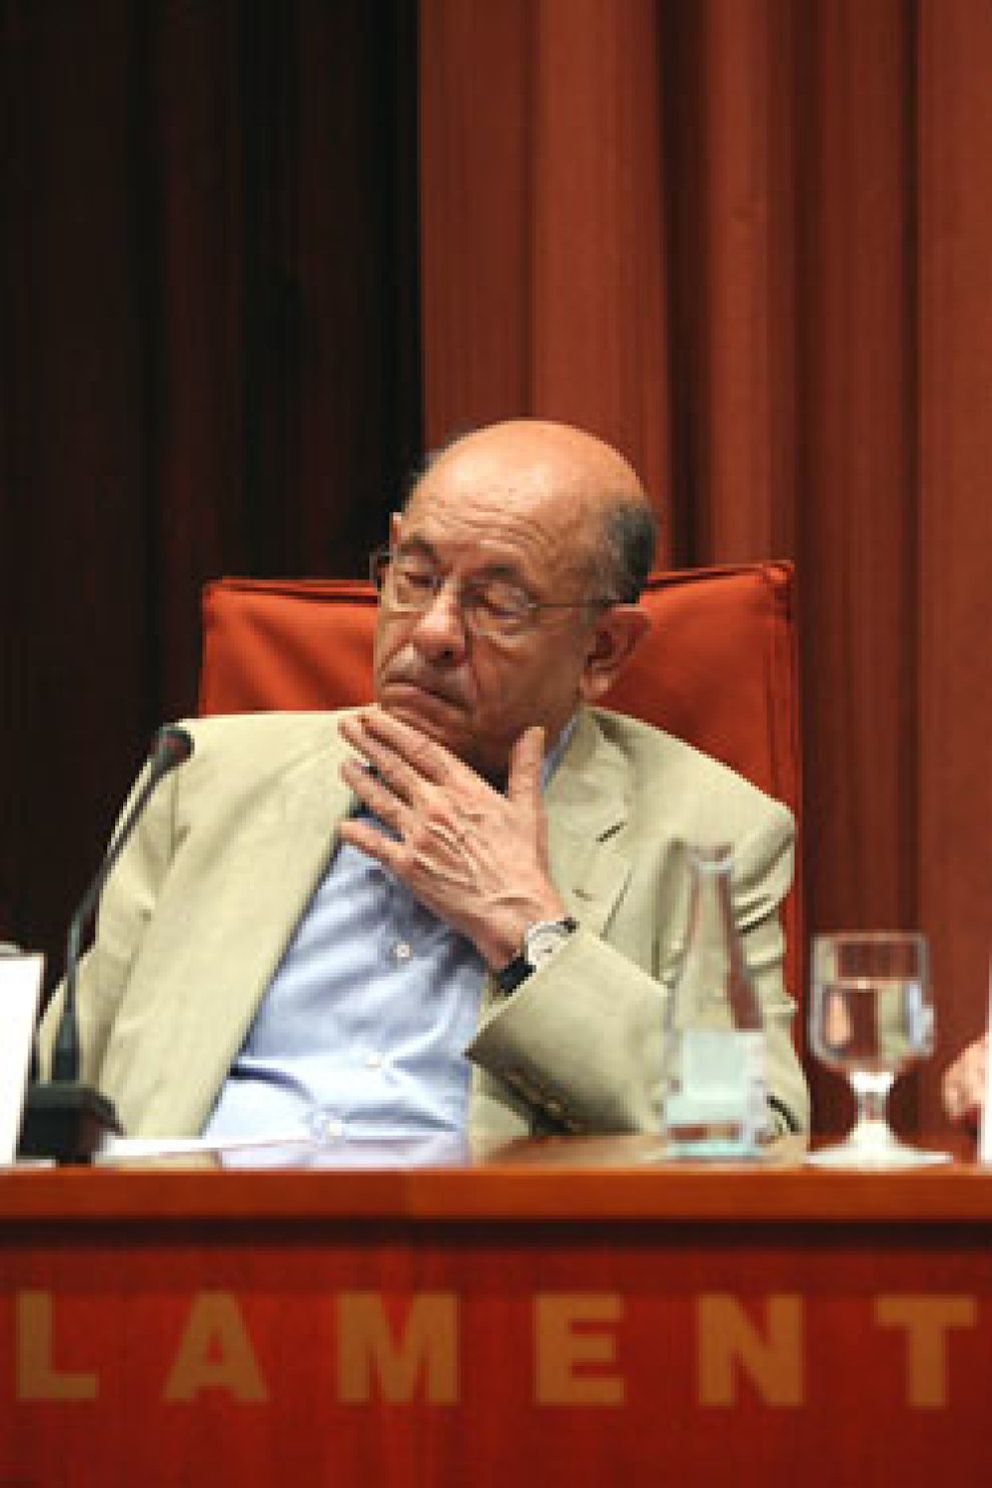 Foto: Millet desvió 35,1 millones de euros del Palau, según la última auditoría